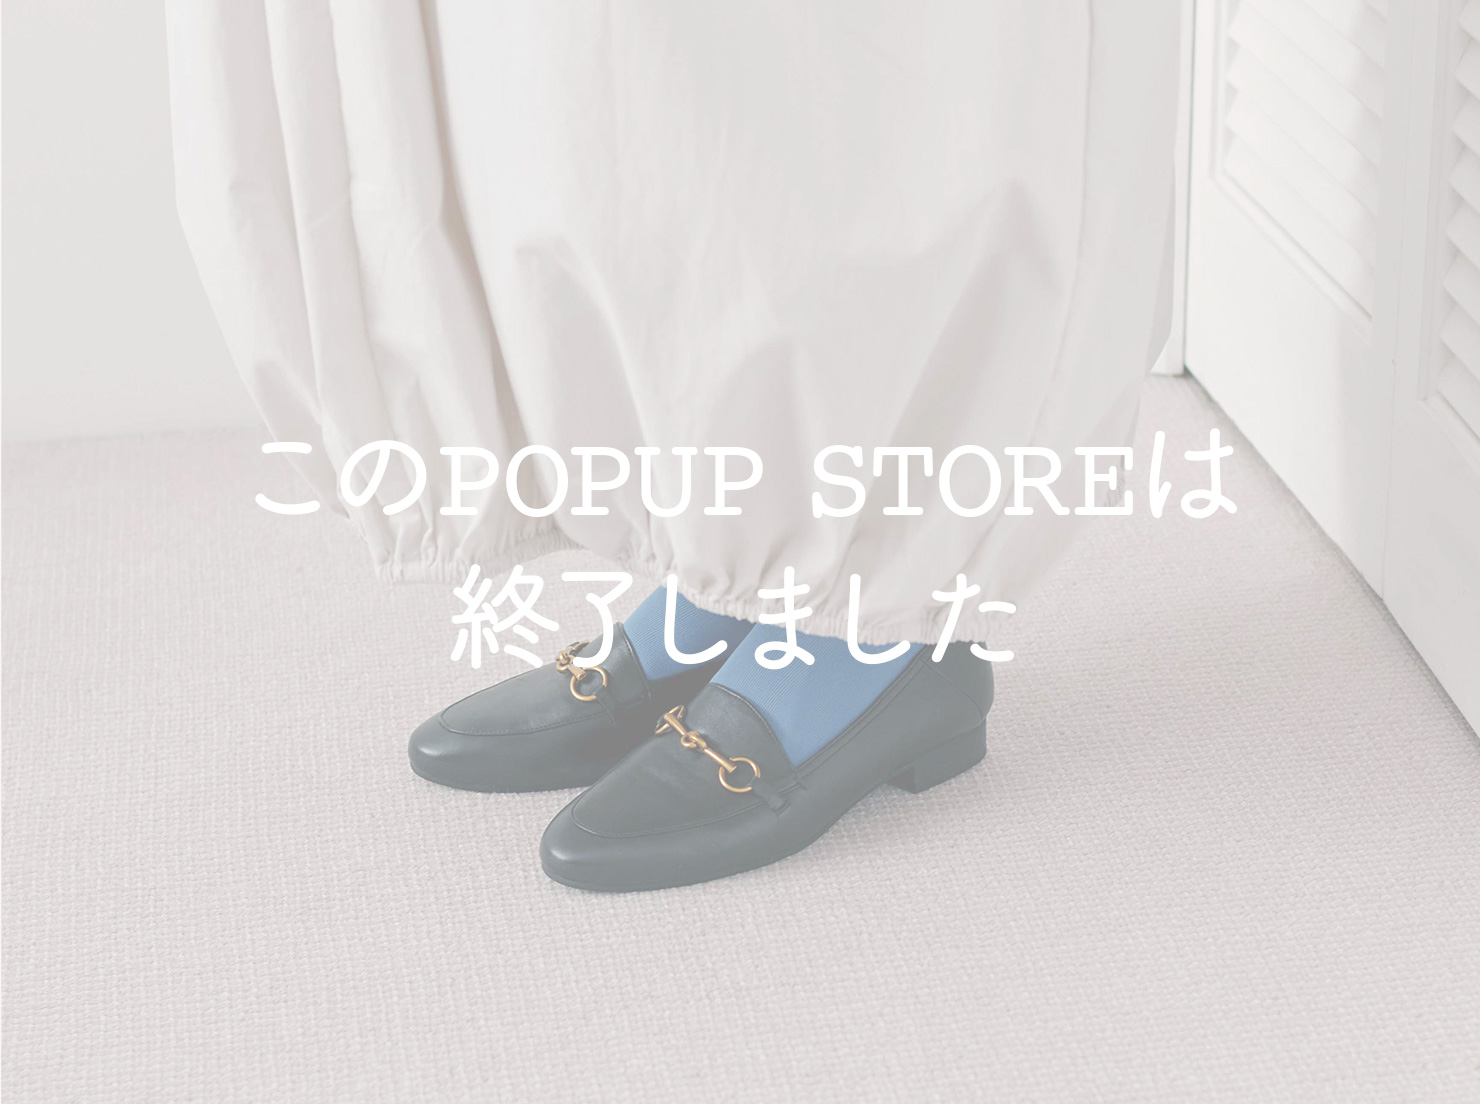 西武渋谷店 POPUP STORE vol.3(終了しました。)